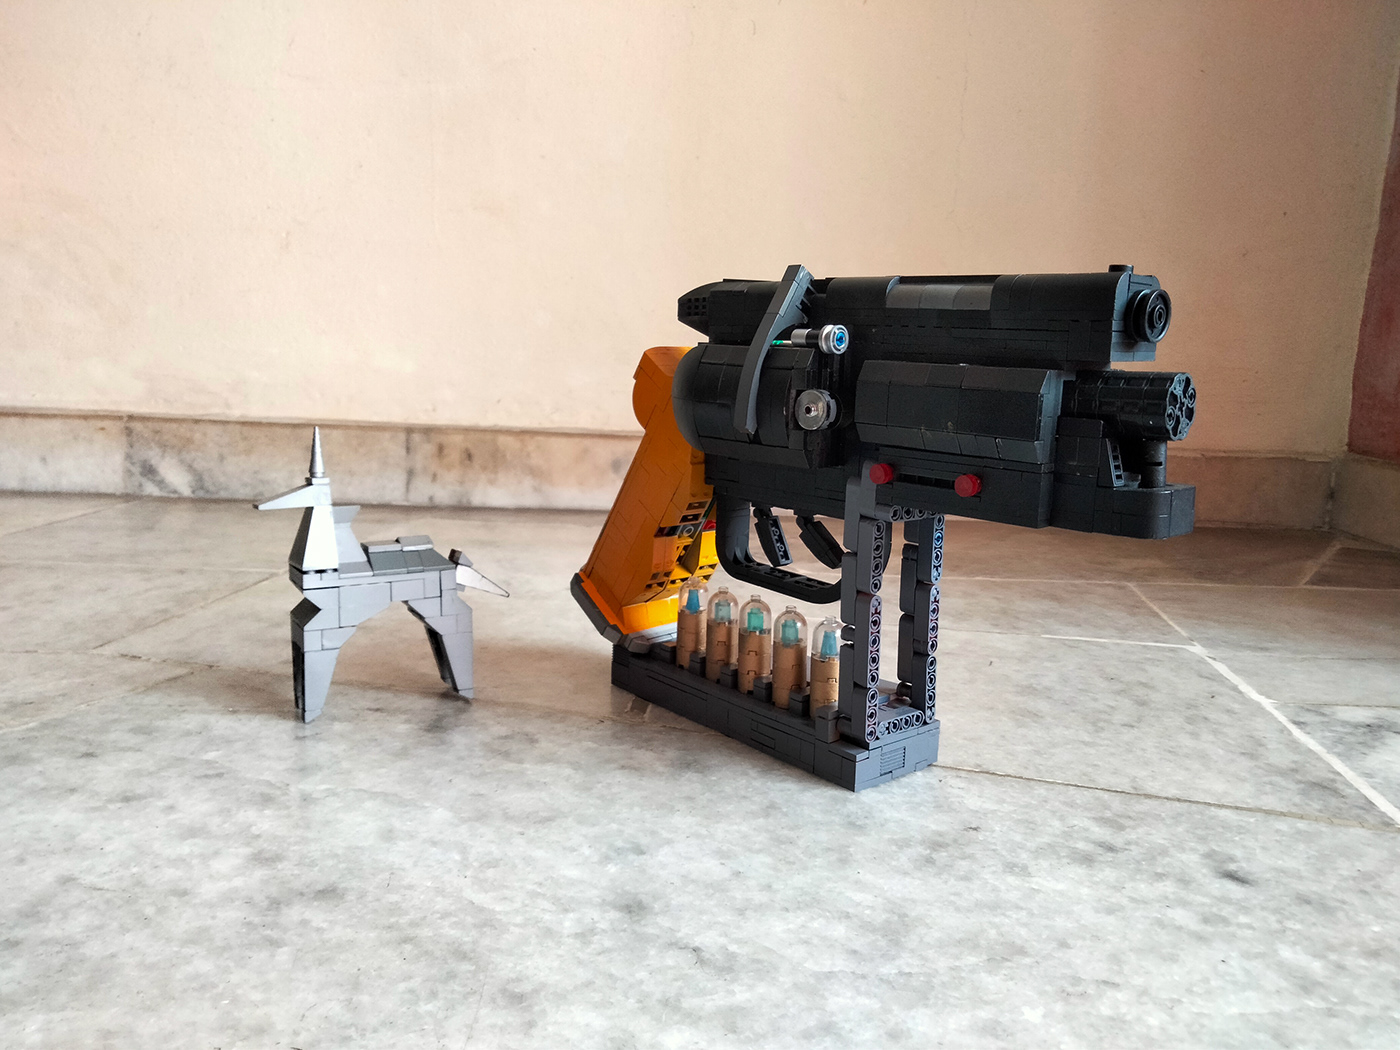 Bladerunner Cyberpunk LEGO Ridley Scott blade runner sci-fi Harrison Ford movie Cinema toy